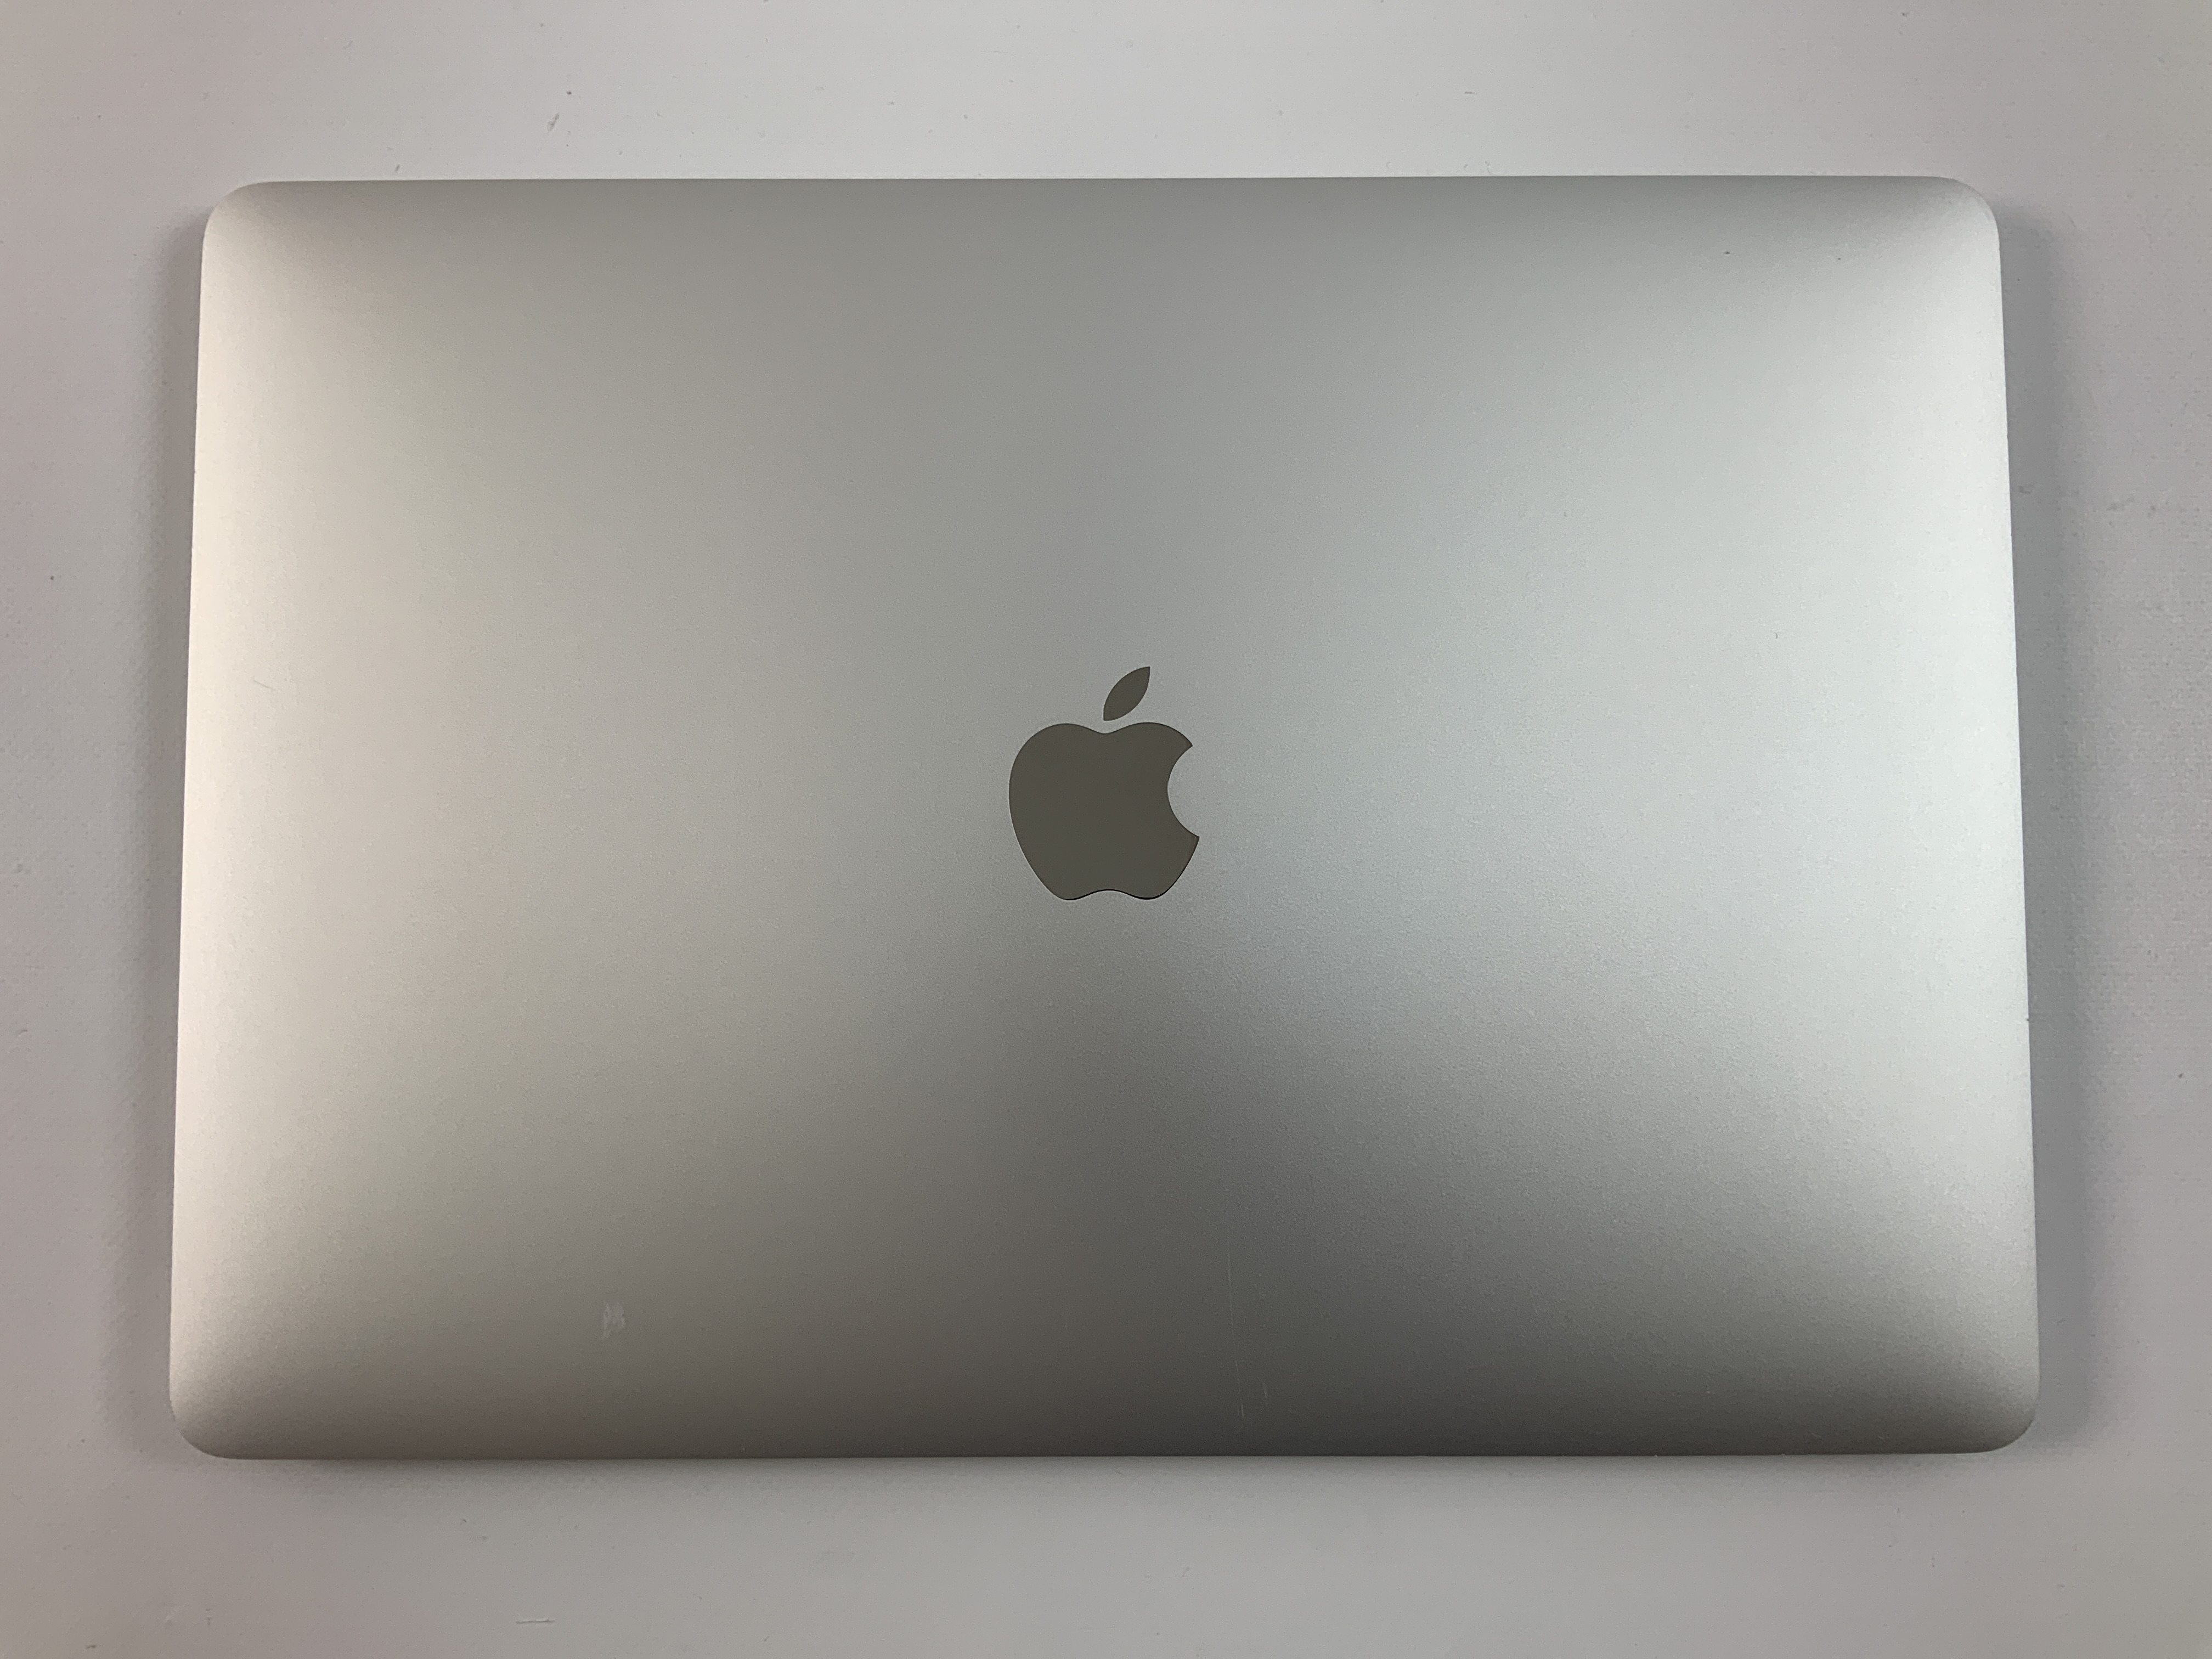 MacBook Pro 13" 4TBT Mid 2019 (Intel Quad-Core i5 2.4 GHz 16 GB RAM 256 GB SSD), Silver, Intel Quad-Core i5 2.4 GHz, 16 GB RAM, 256 GB SSD, imagen 4